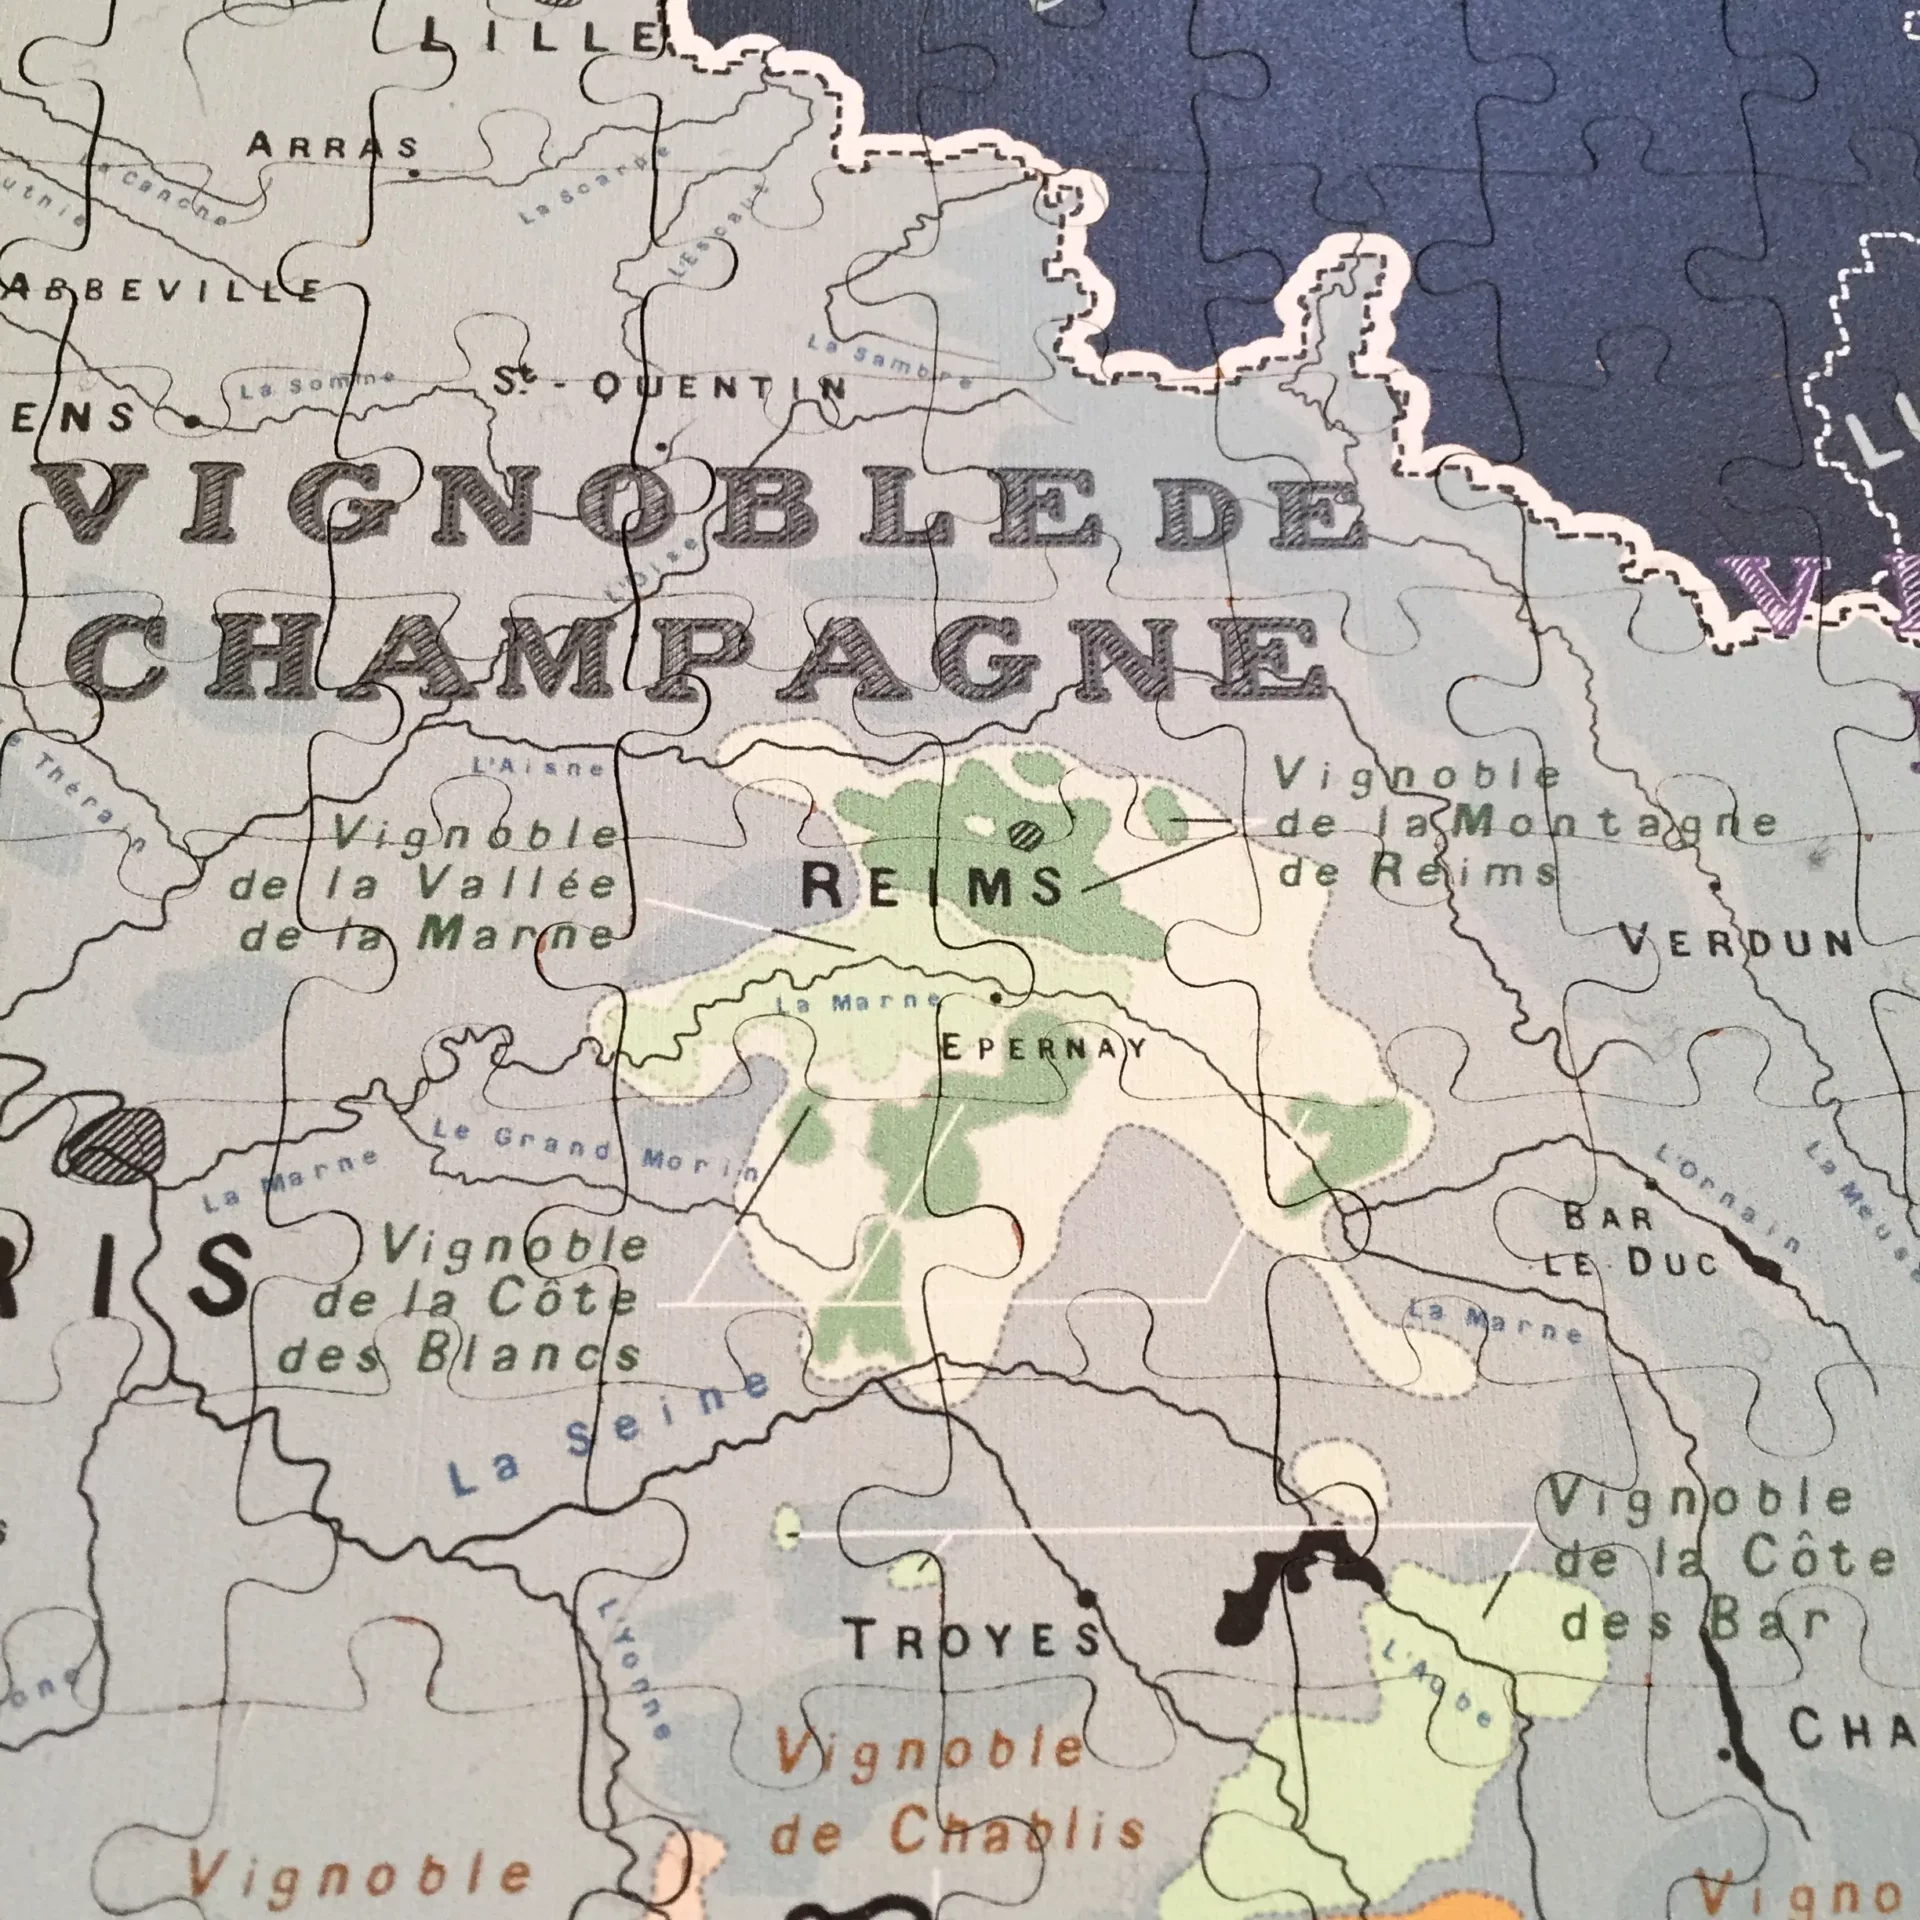 Puzzle carte des vins de France - Heureux comme un Prince